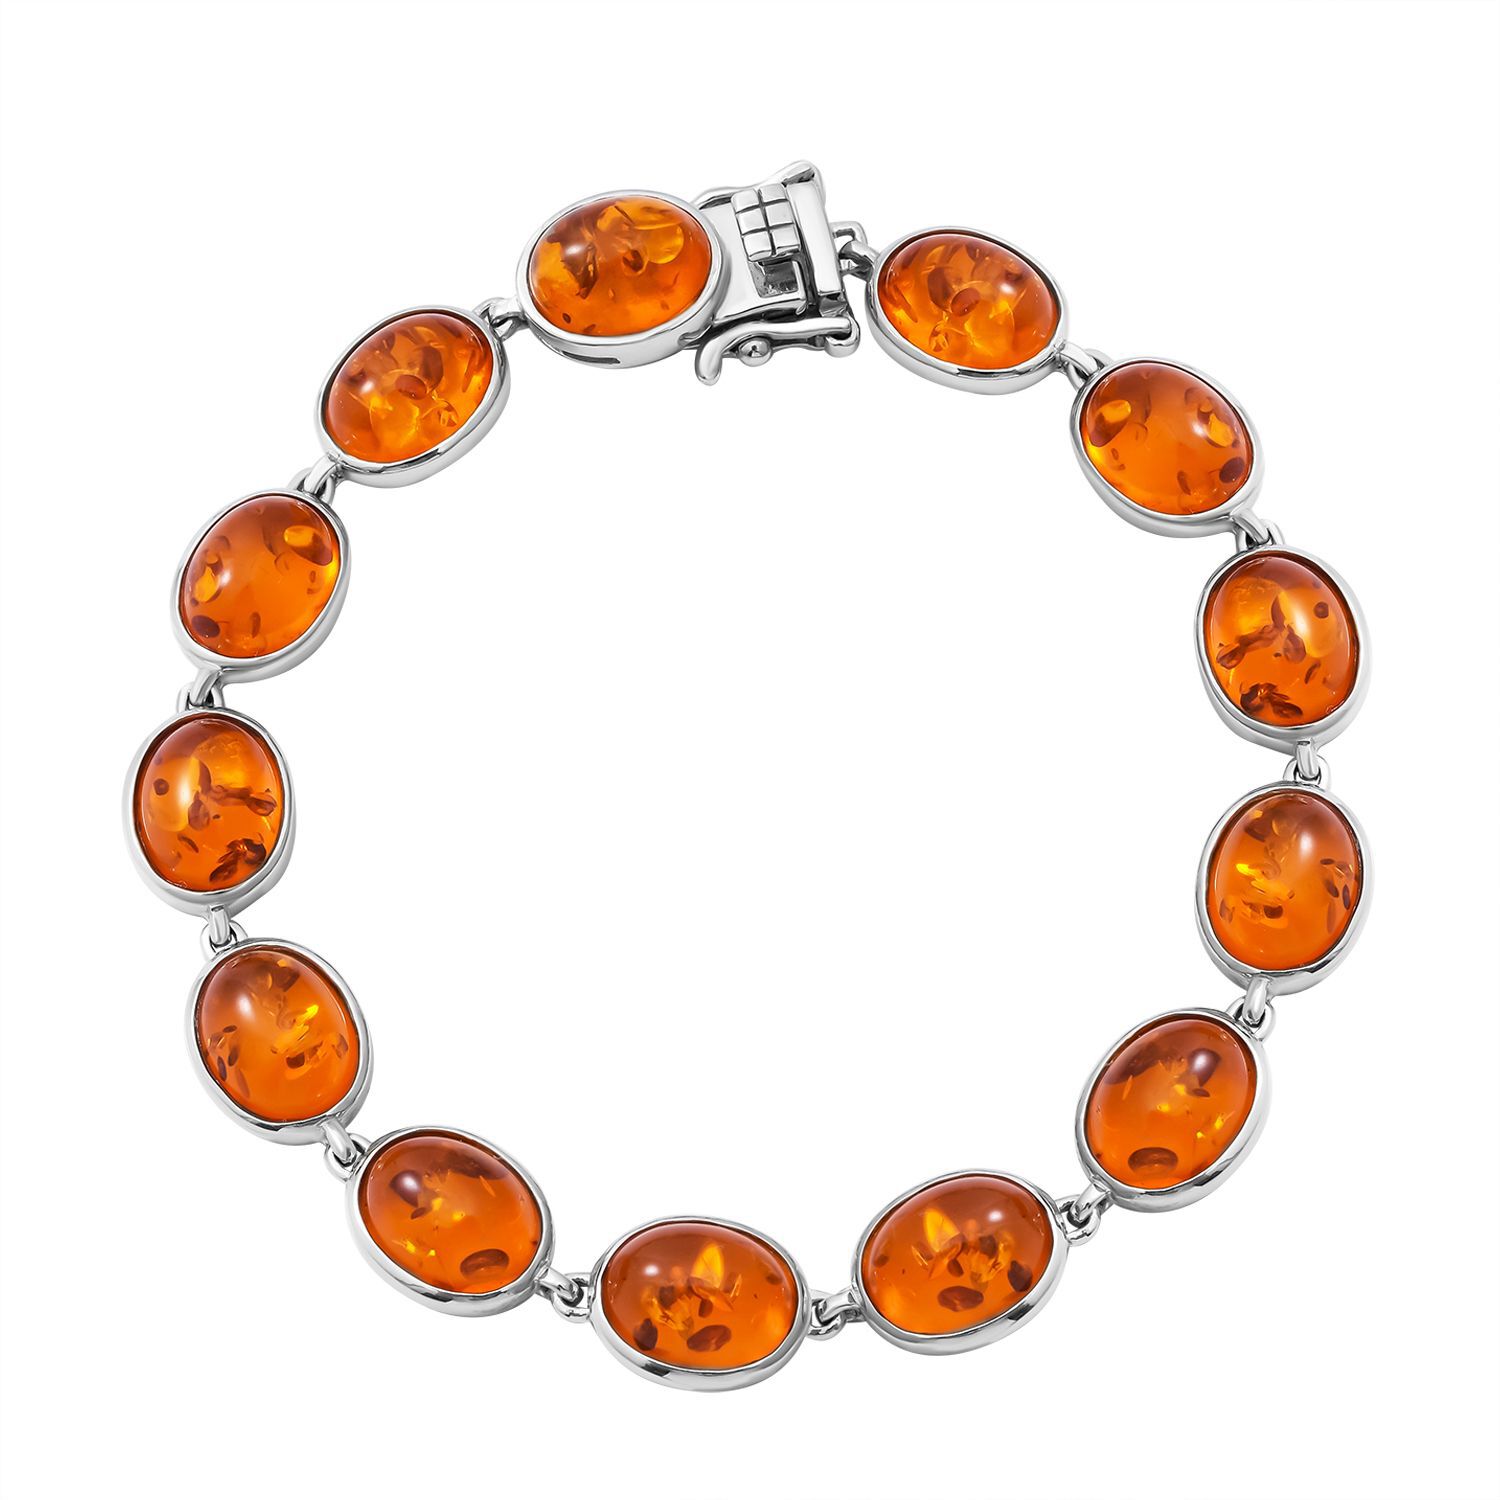 81B 250 Perles Acrylique orange clair ~ 6mm ~ ~ ~ collier bracelet charmes vin UK 